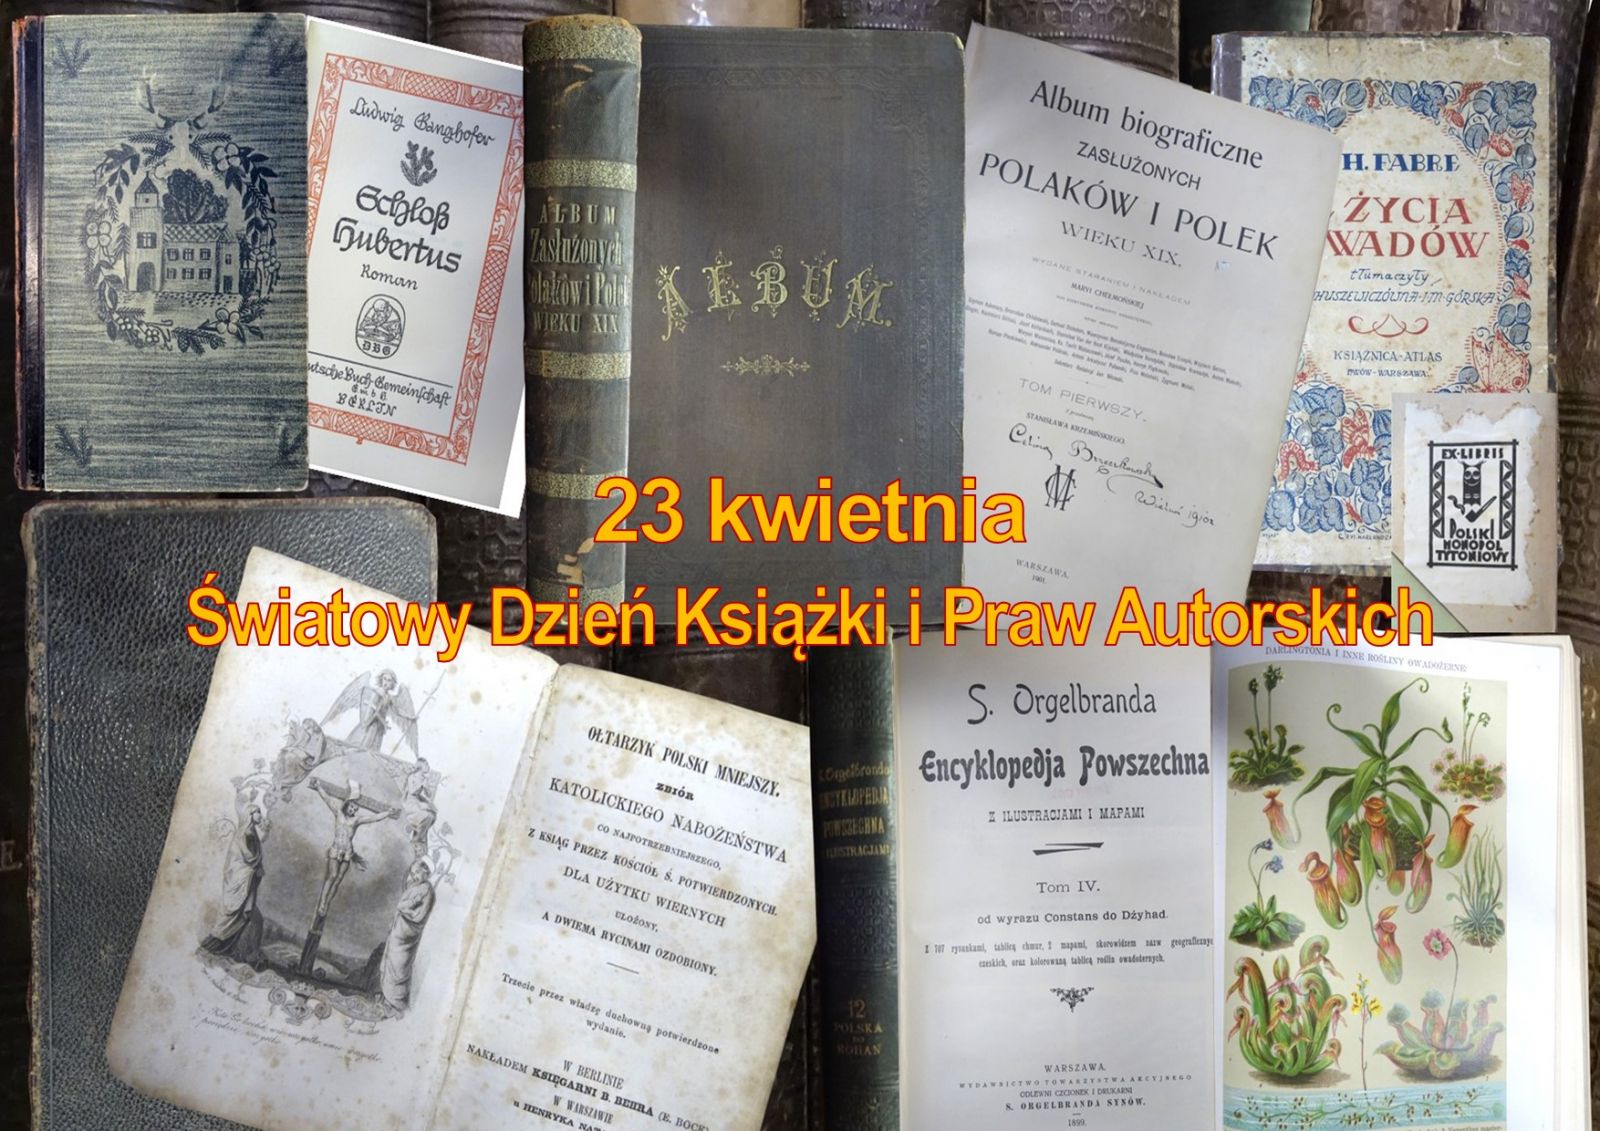 Zdjęcie z żółtym napisem na środku: 23 kwietnia - Światowy Dzień Książki i Praw Autorskich. W tle zdjęcia okładek, stron tytułowych, ilustracji i grzbietów najstarszych książek w Bibliotece w Żaganiu